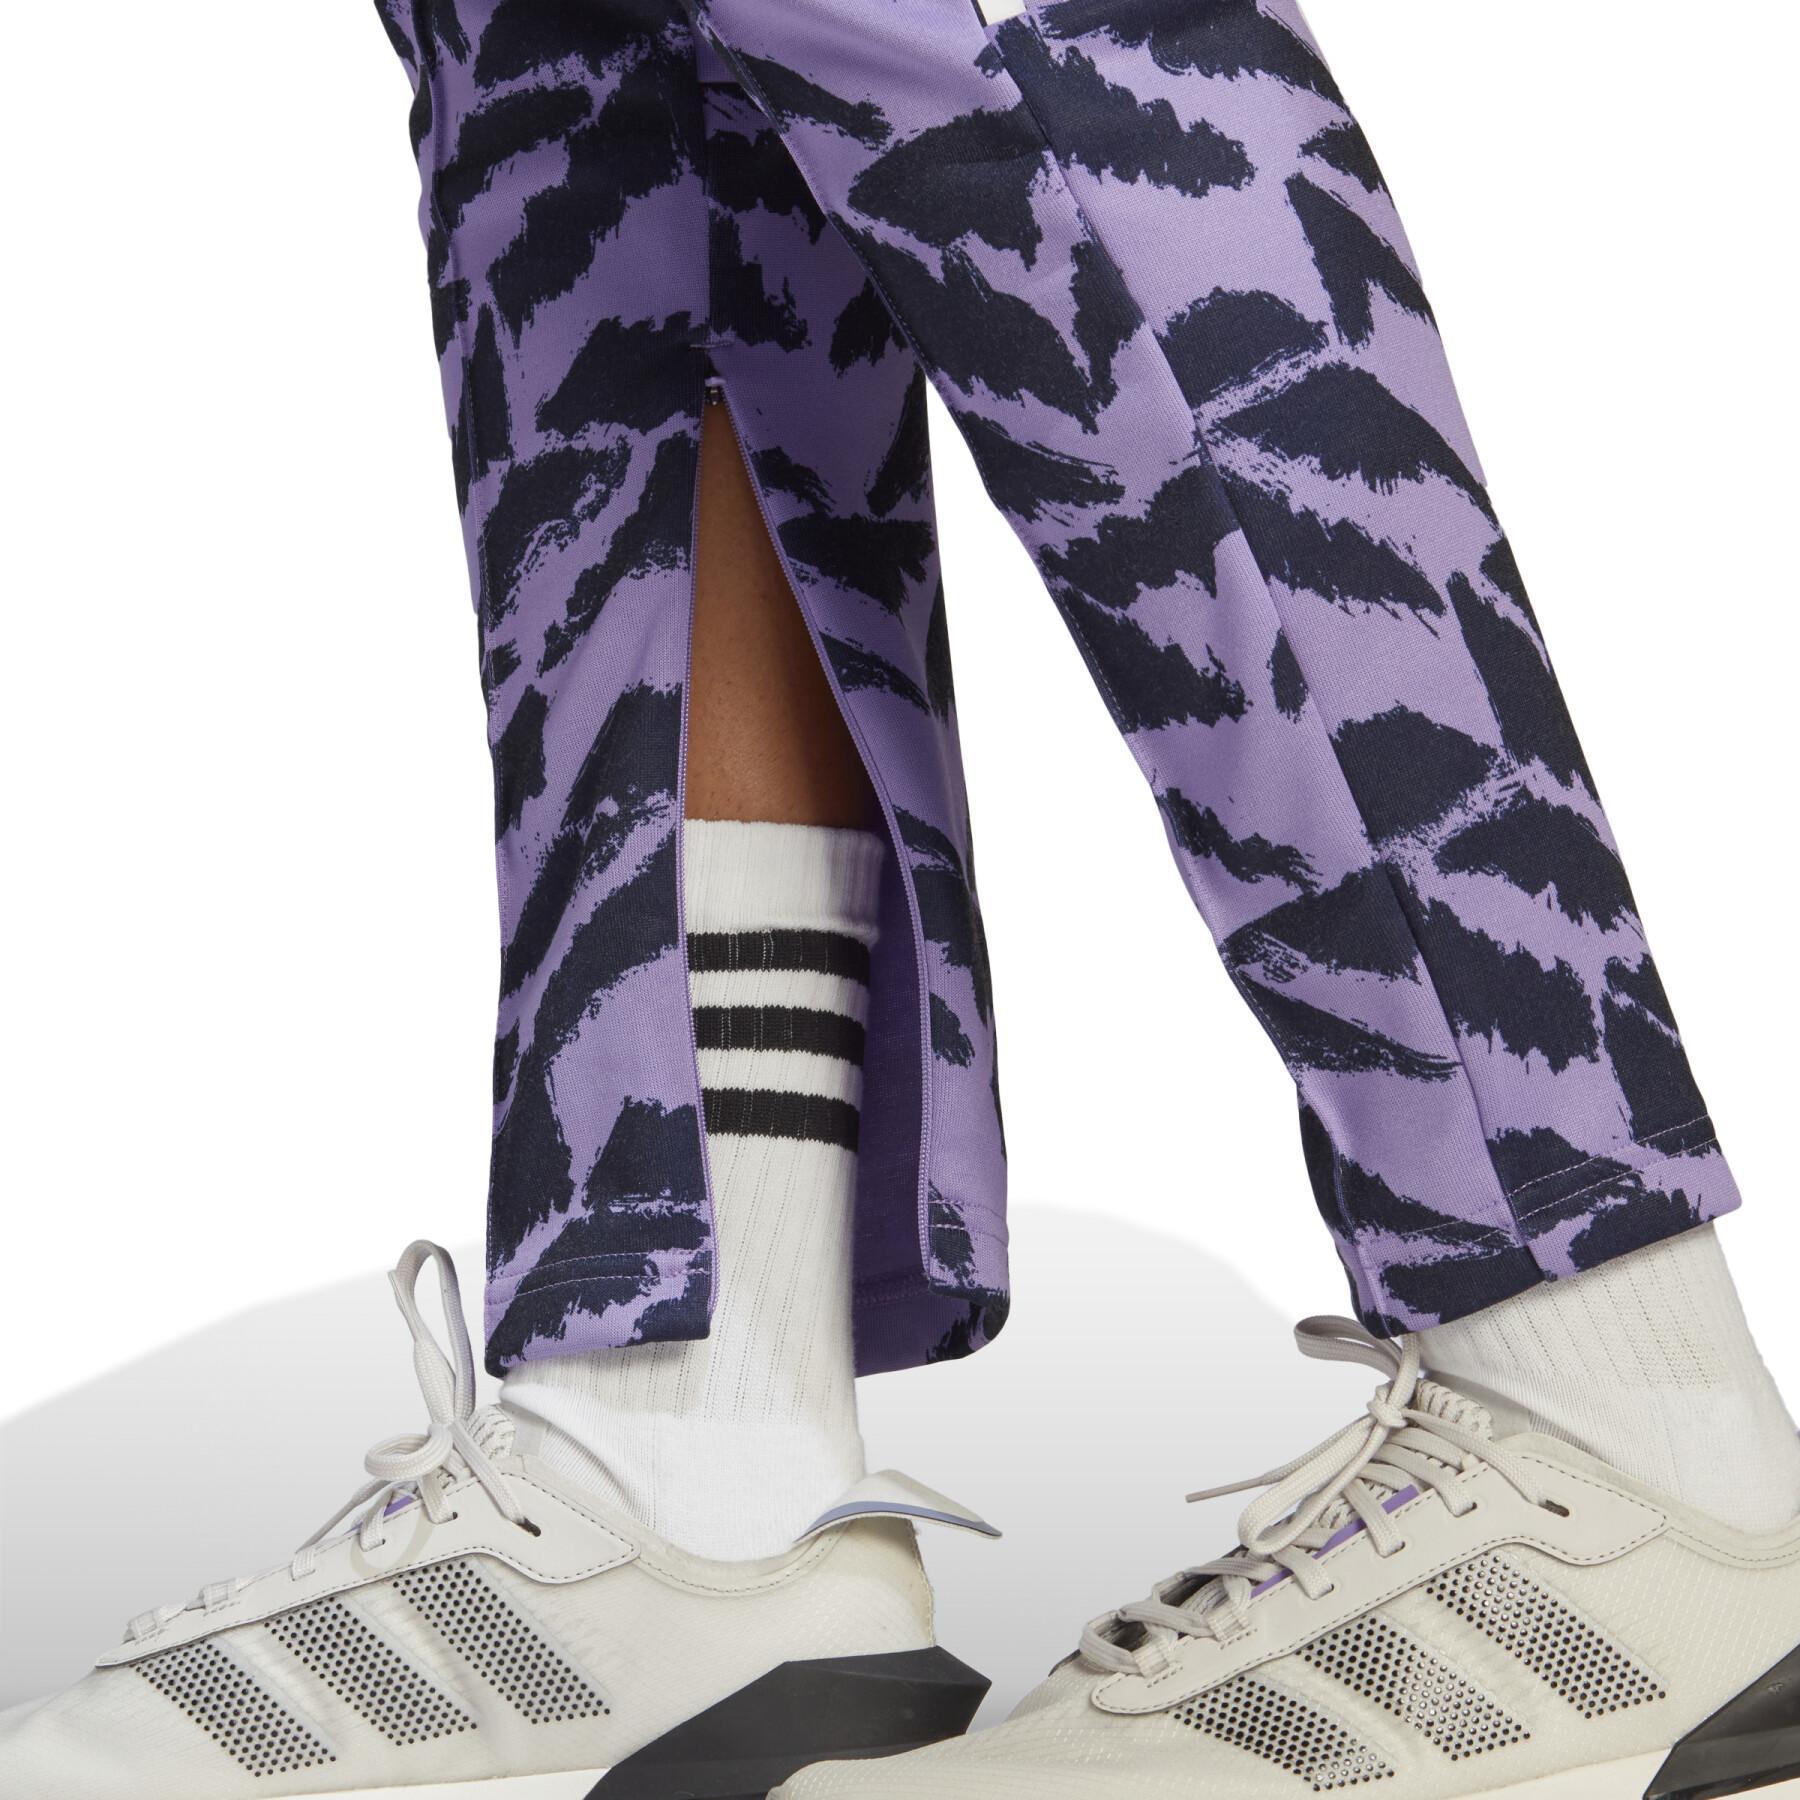 Jogging kobieta adidas Tiro Suit Up Lifestyle